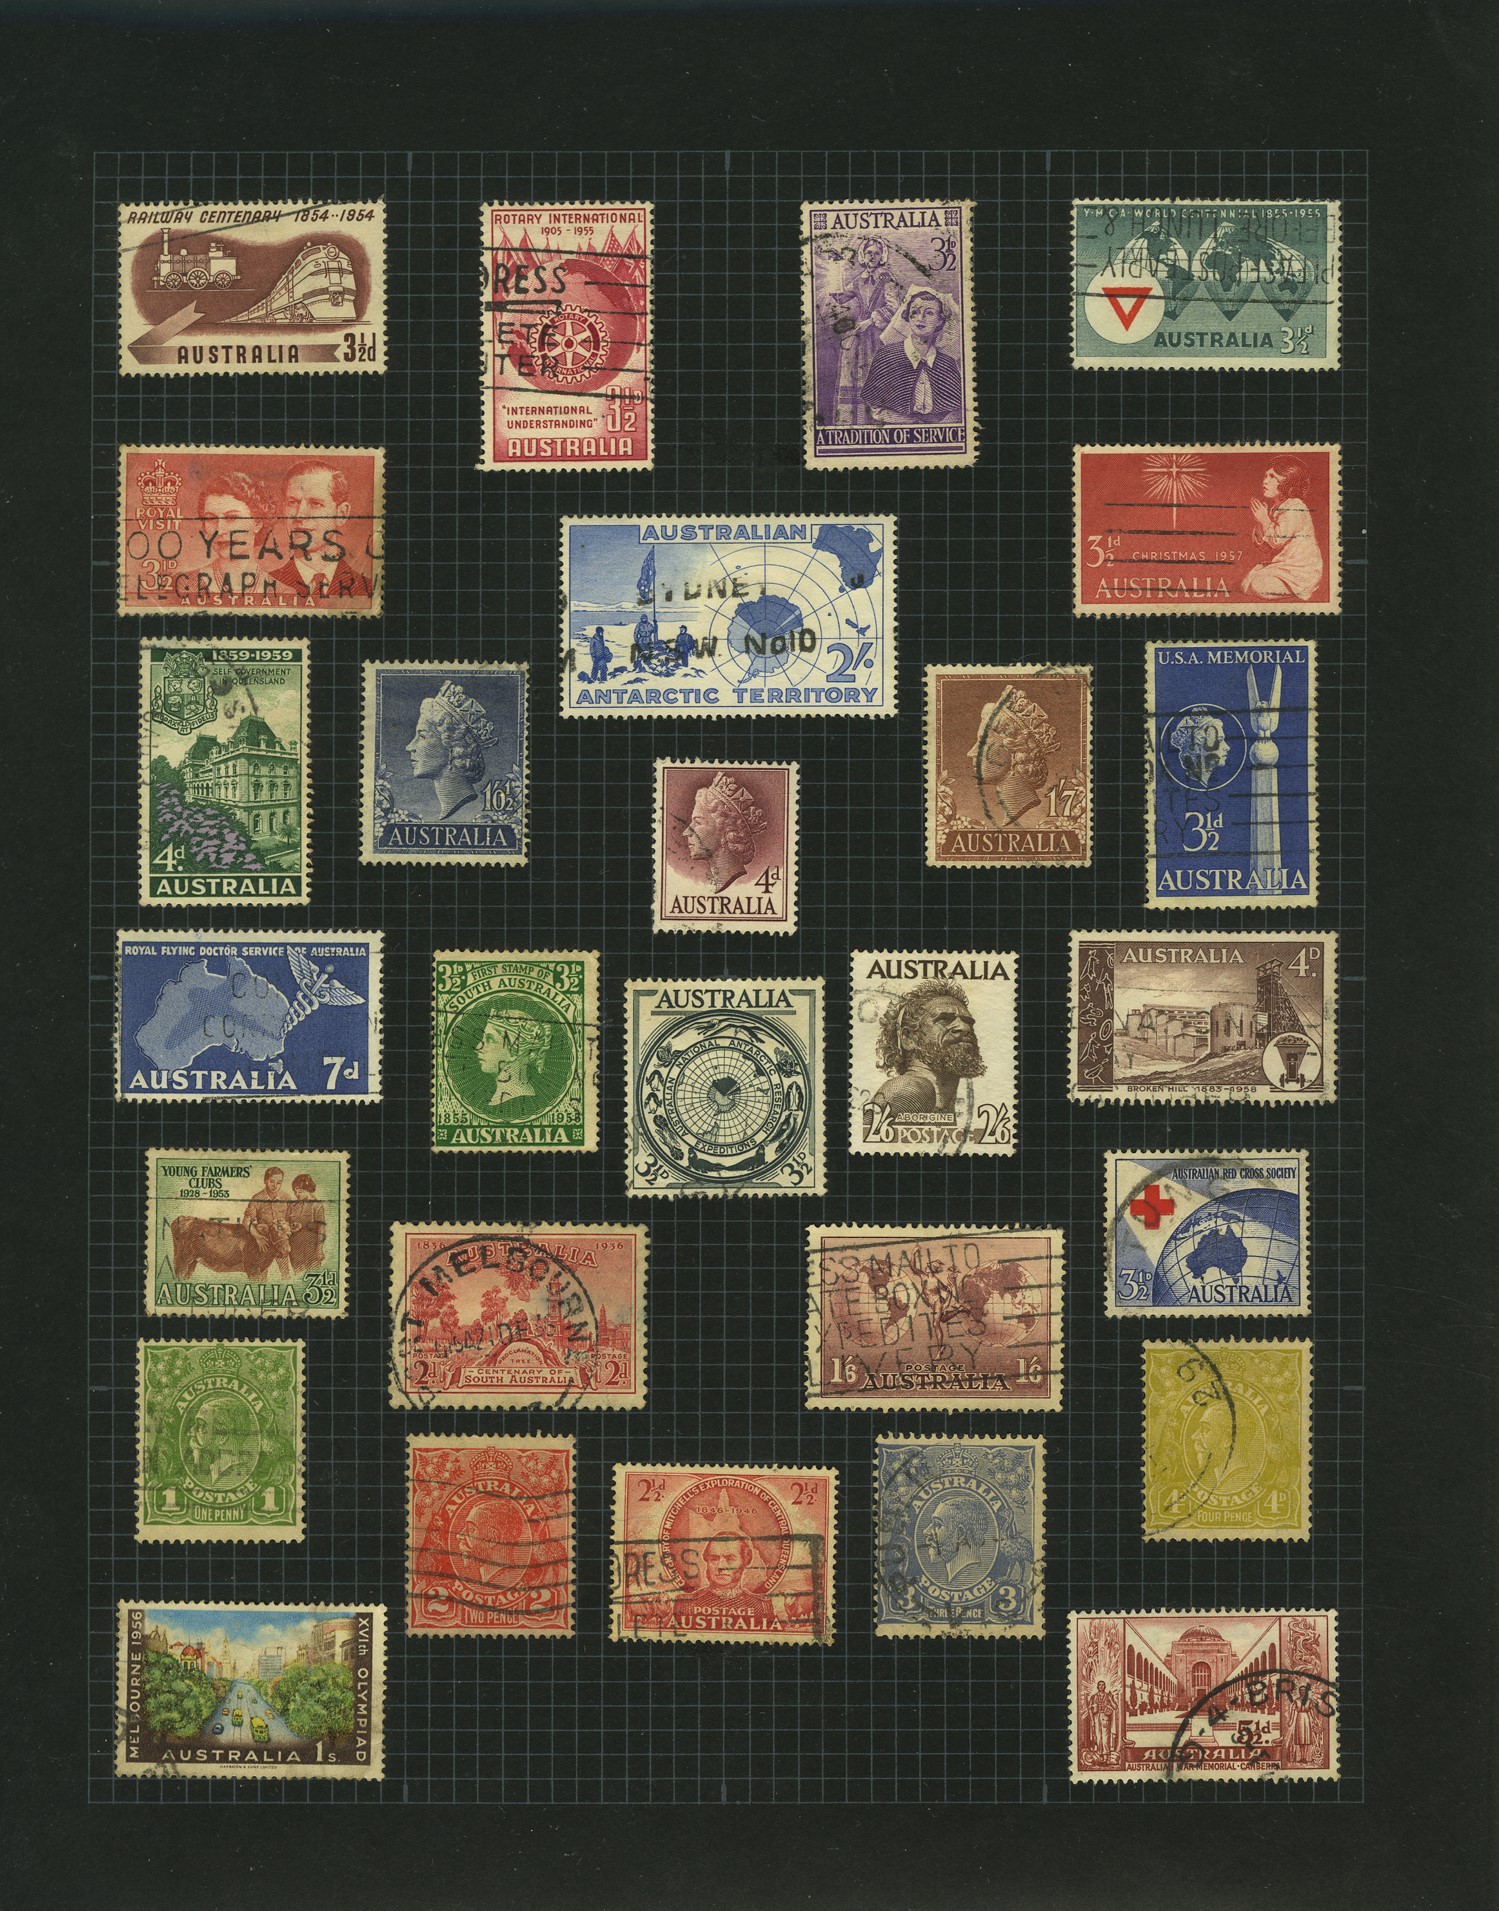 Freddie Mercury's Stamp Album - The Postal Museum